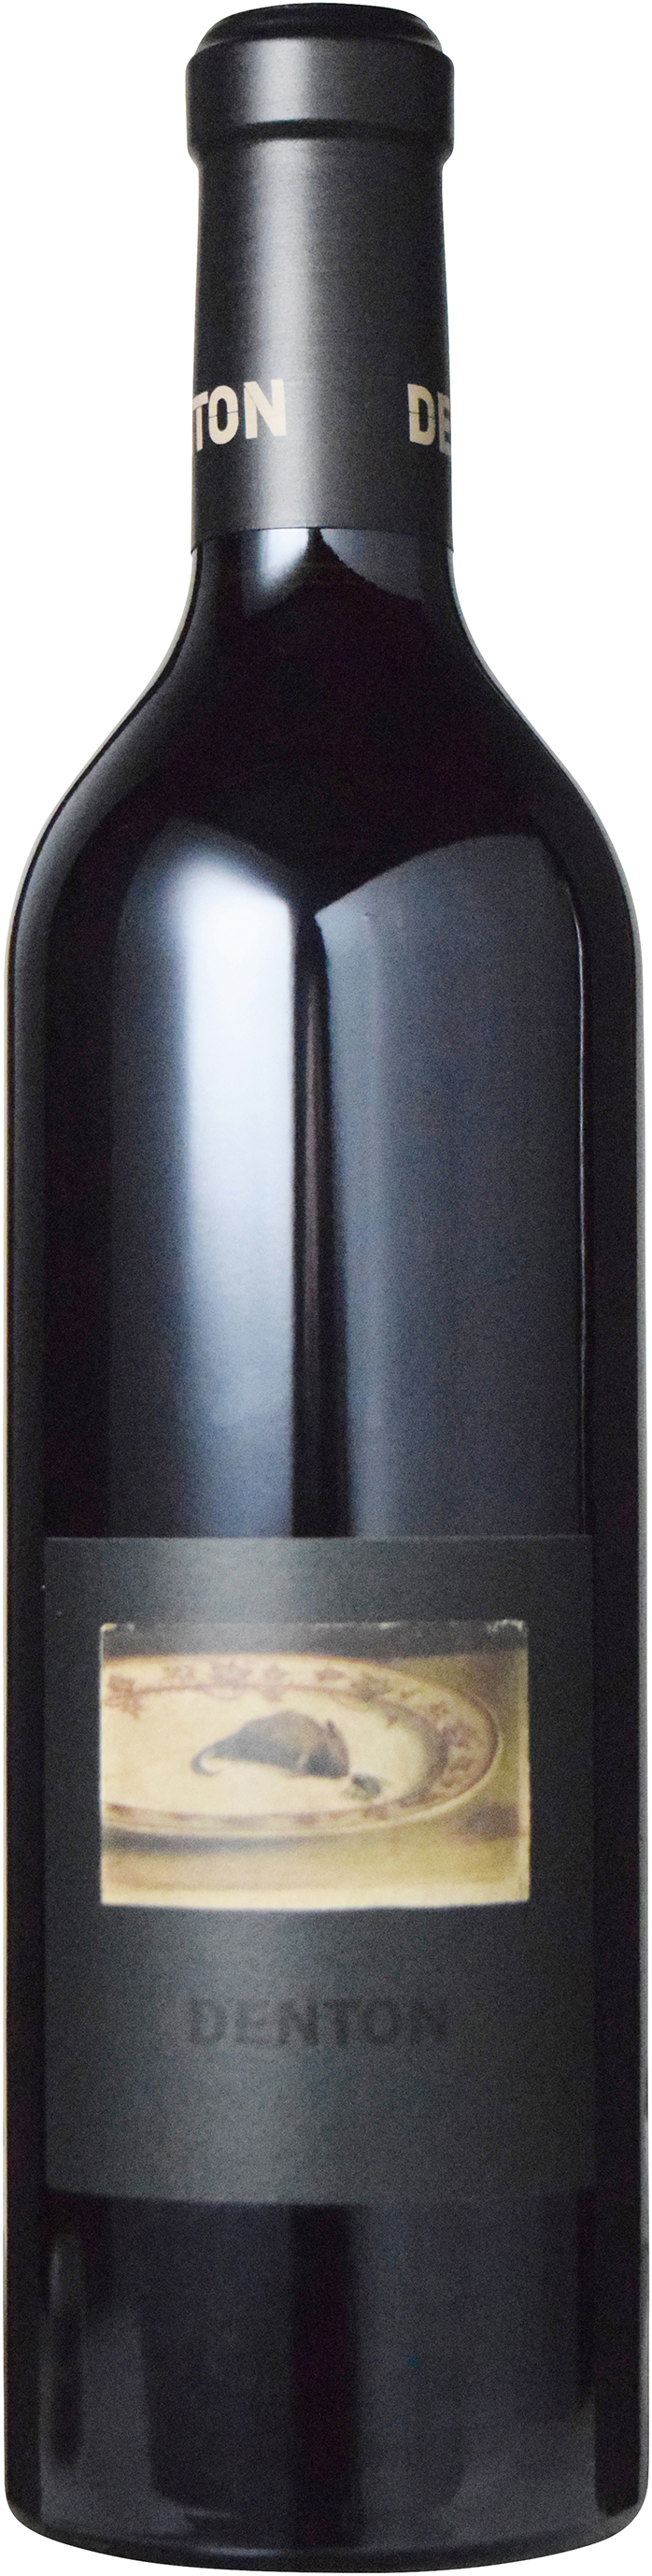 豪州ネッビオーロの達人ルーク ランバートの極上ワイン でおすすめアイテム。 デントン ネッビオーロ2017 2021年最新海外 ヴュー ヒル ヴィンヤード